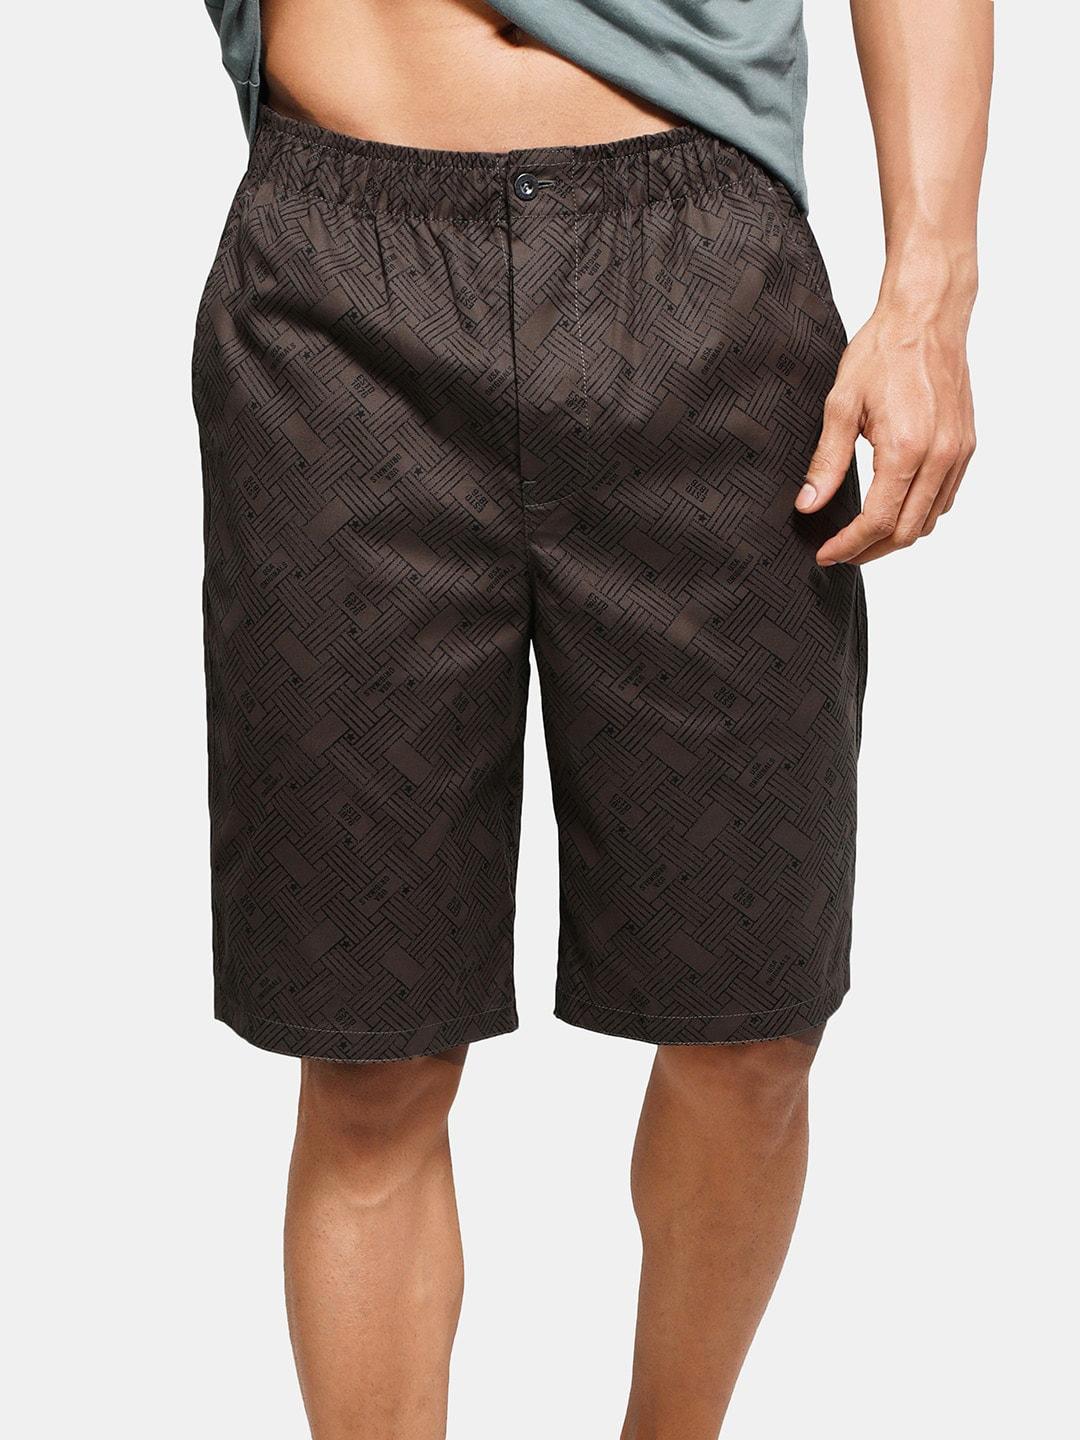 jockey men abstract printed mid rise cotton shorts